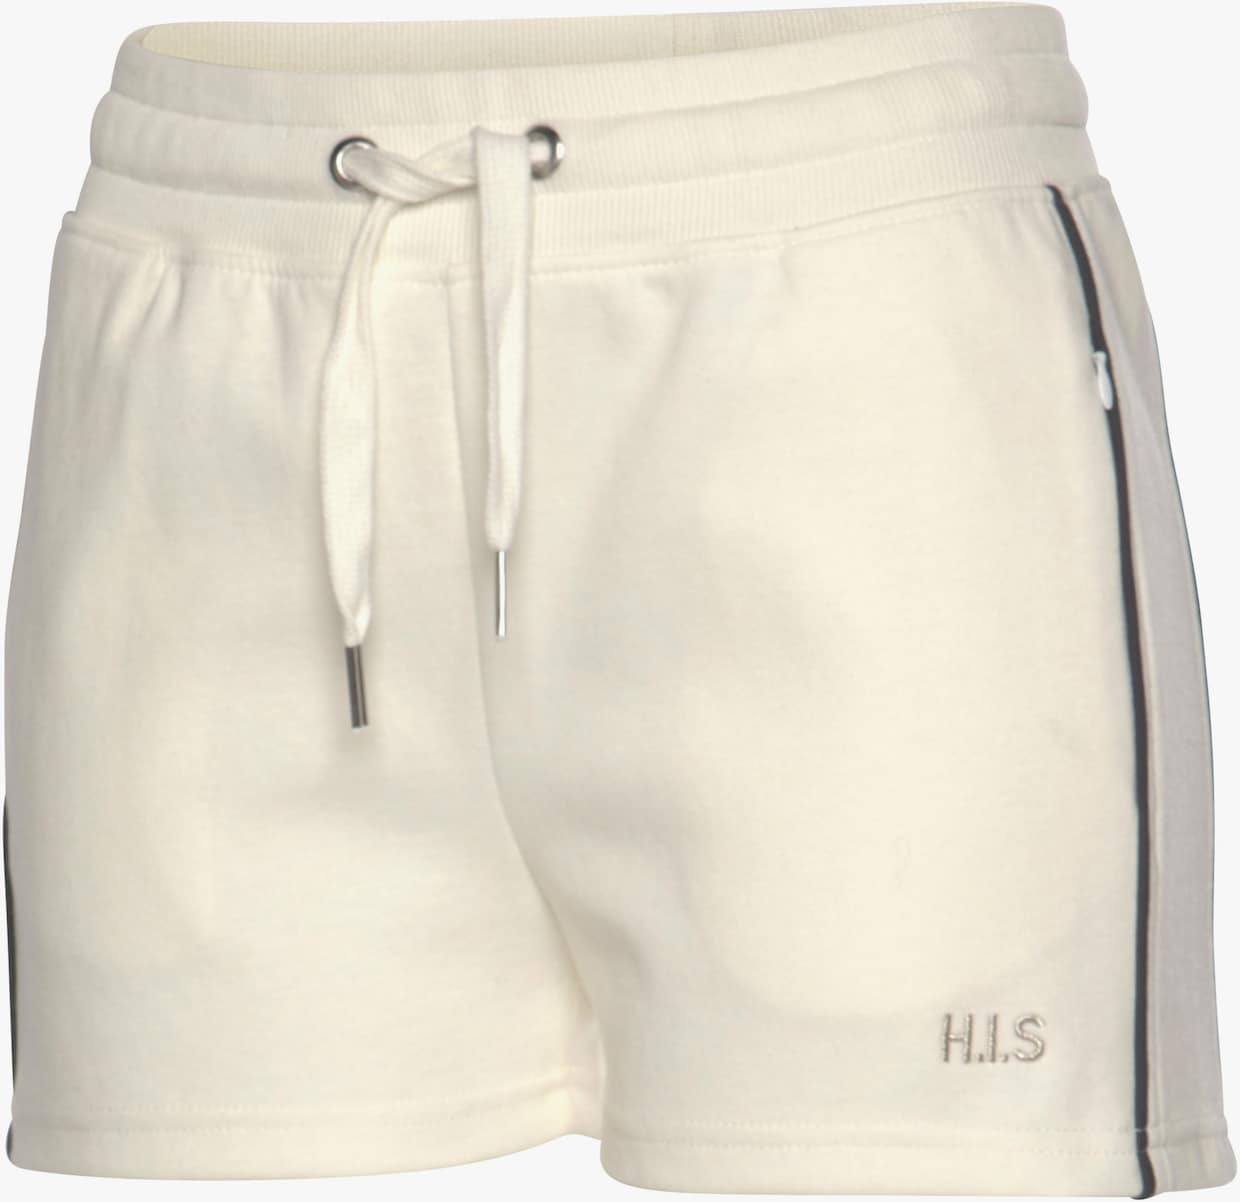 H.I.S Shorts - ecru